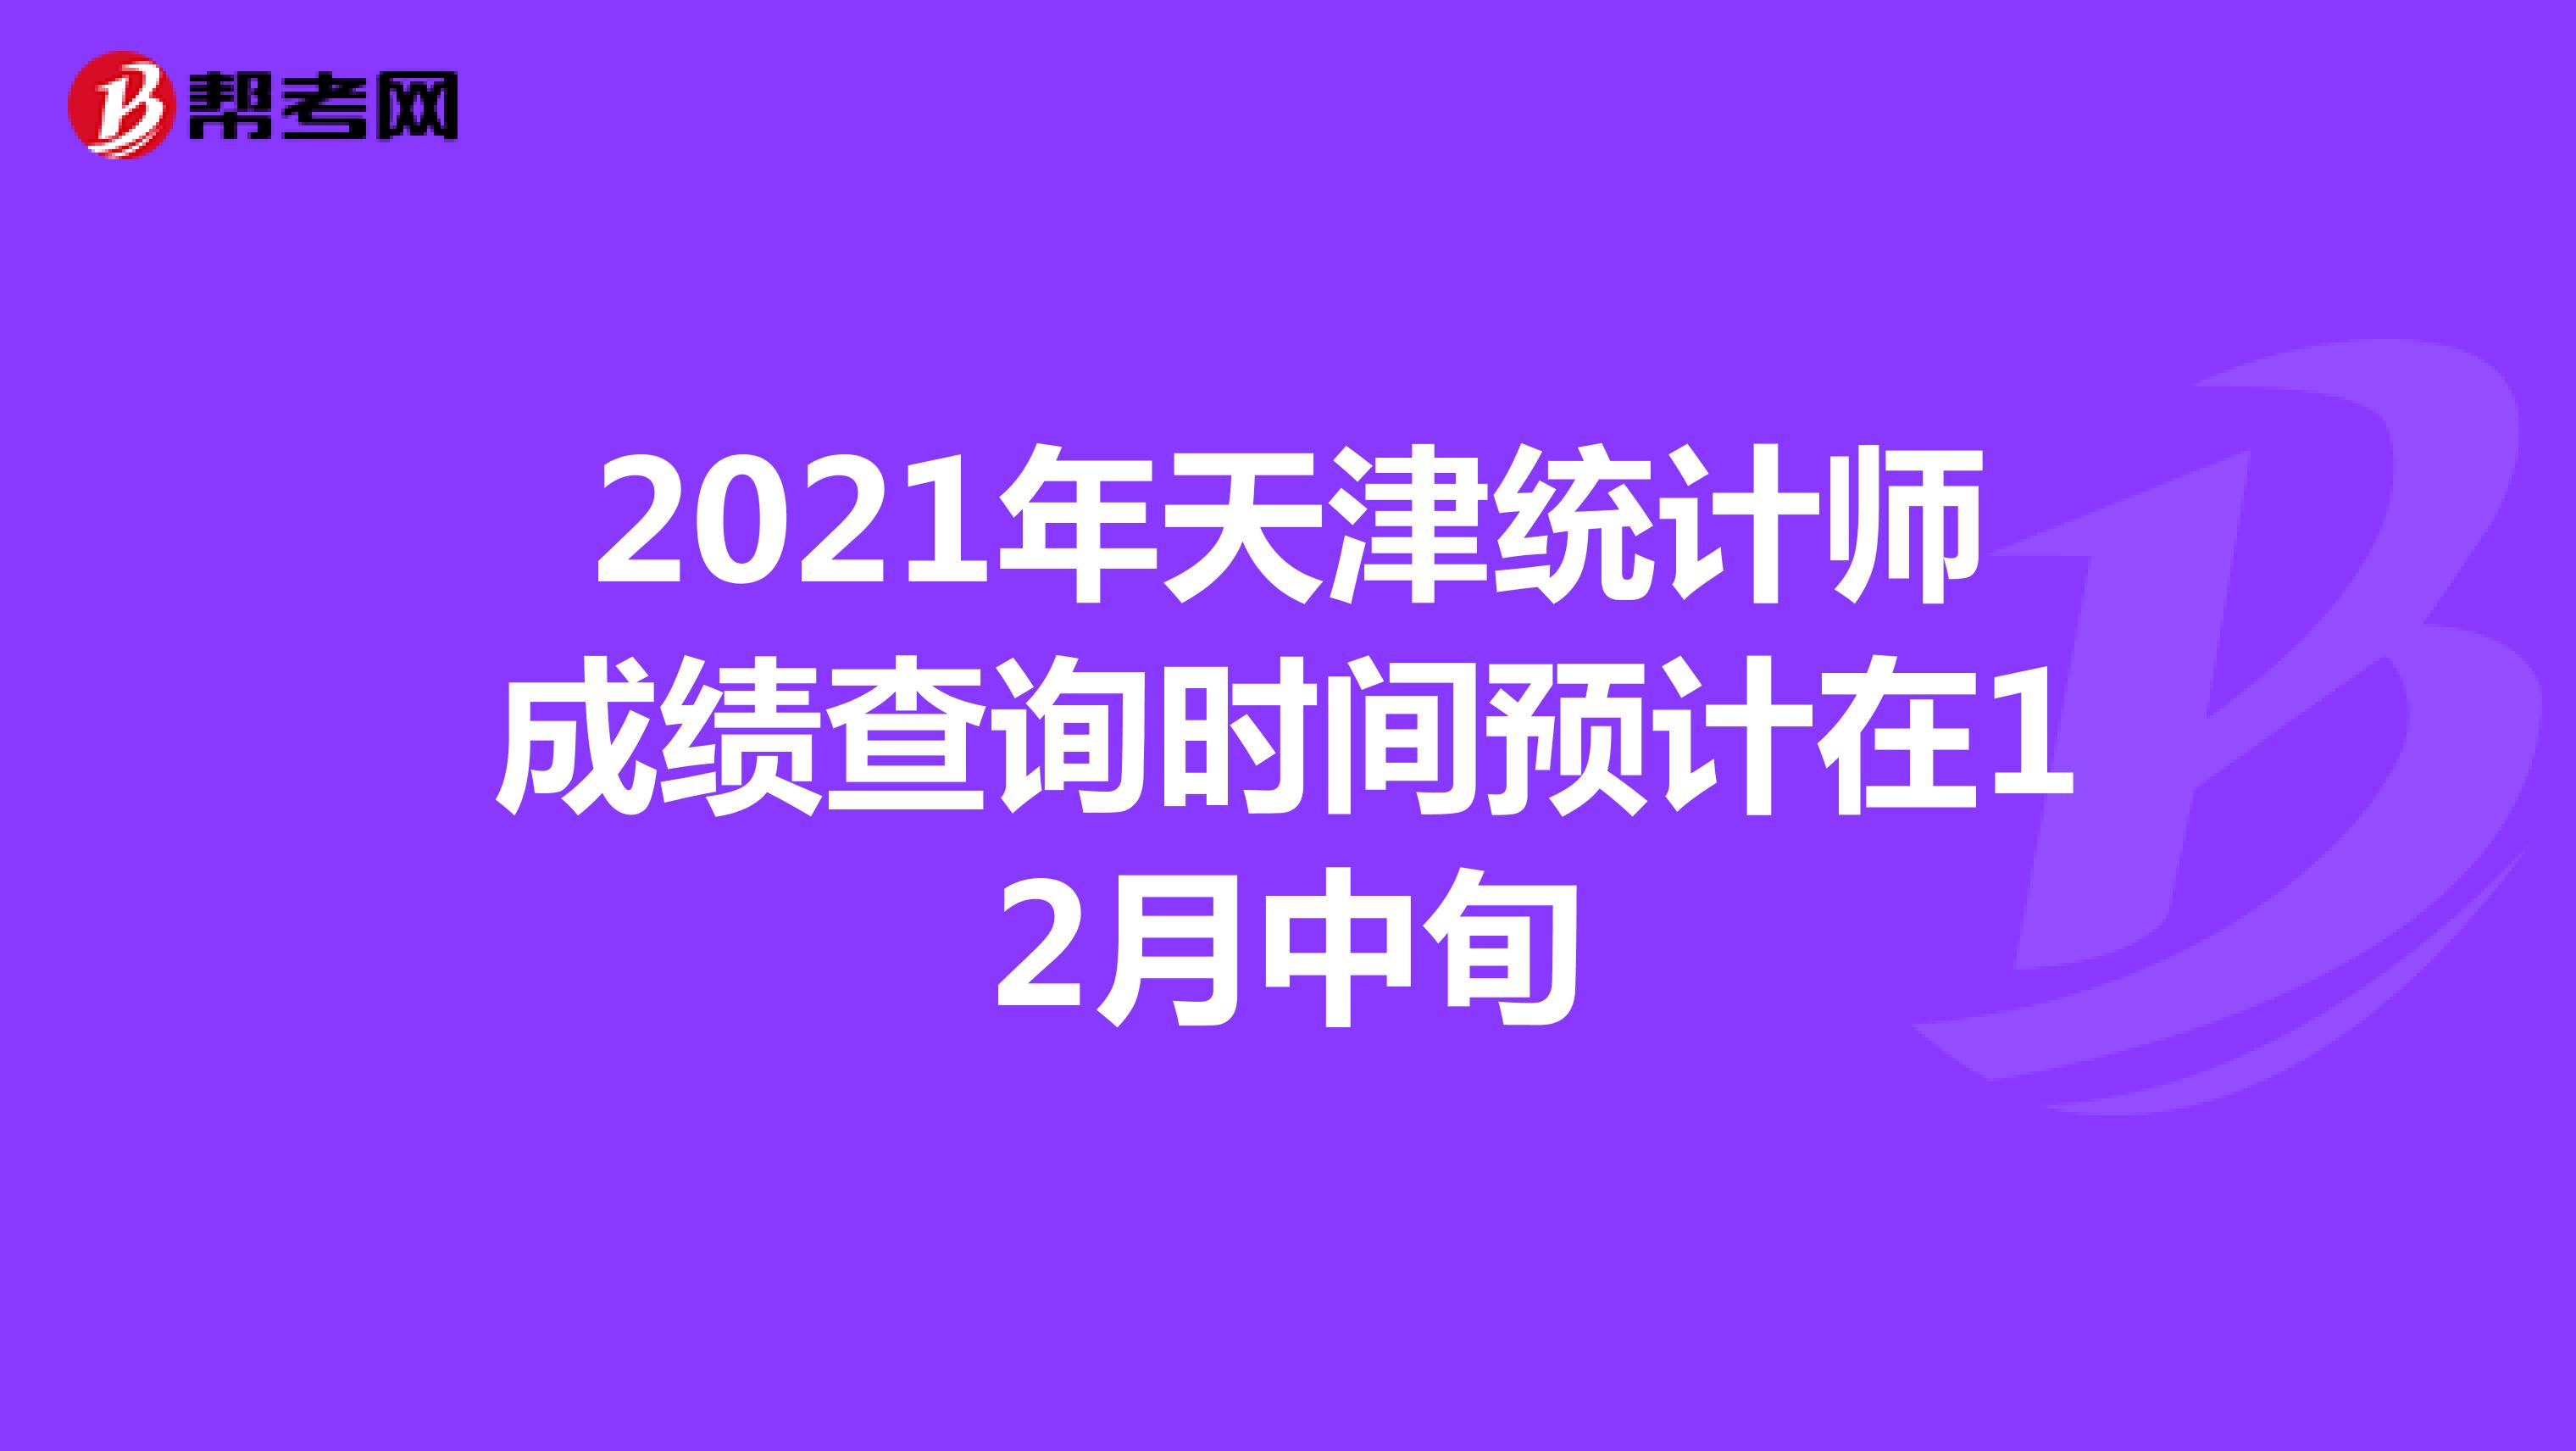 2021年天津统计师成绩查询时间预计在12月中旬